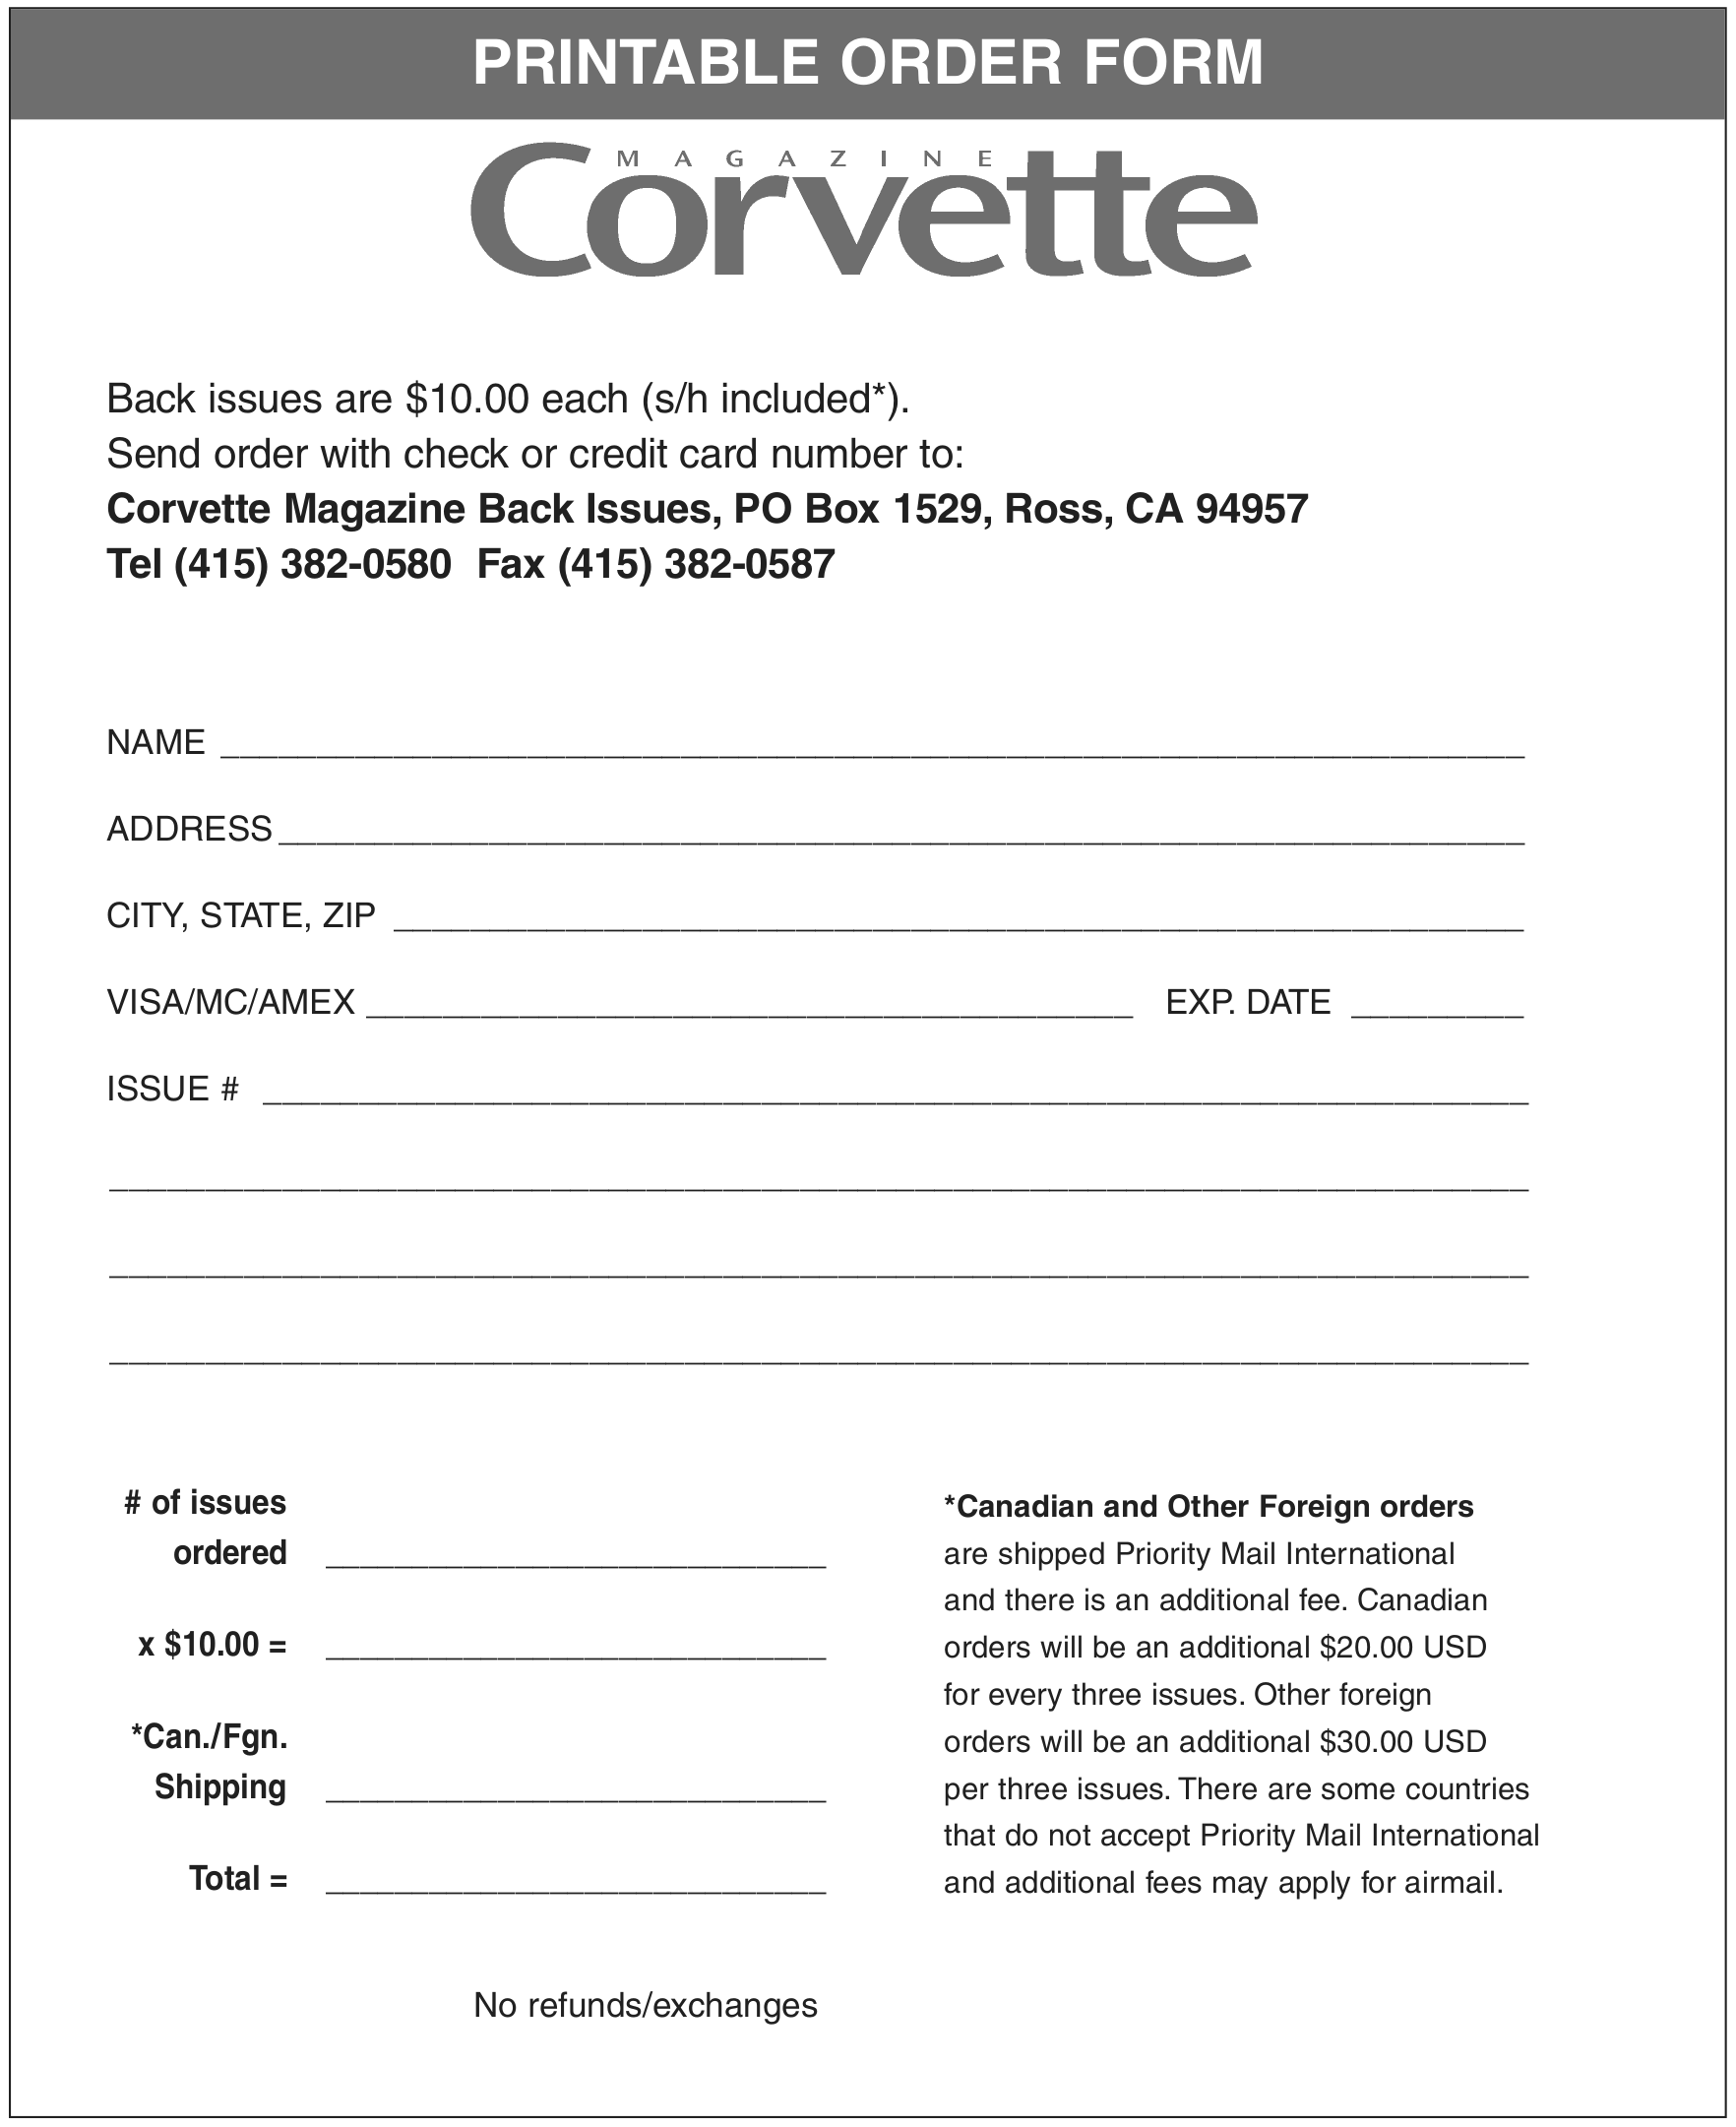 Corvette Magazine Back Issues Order Form